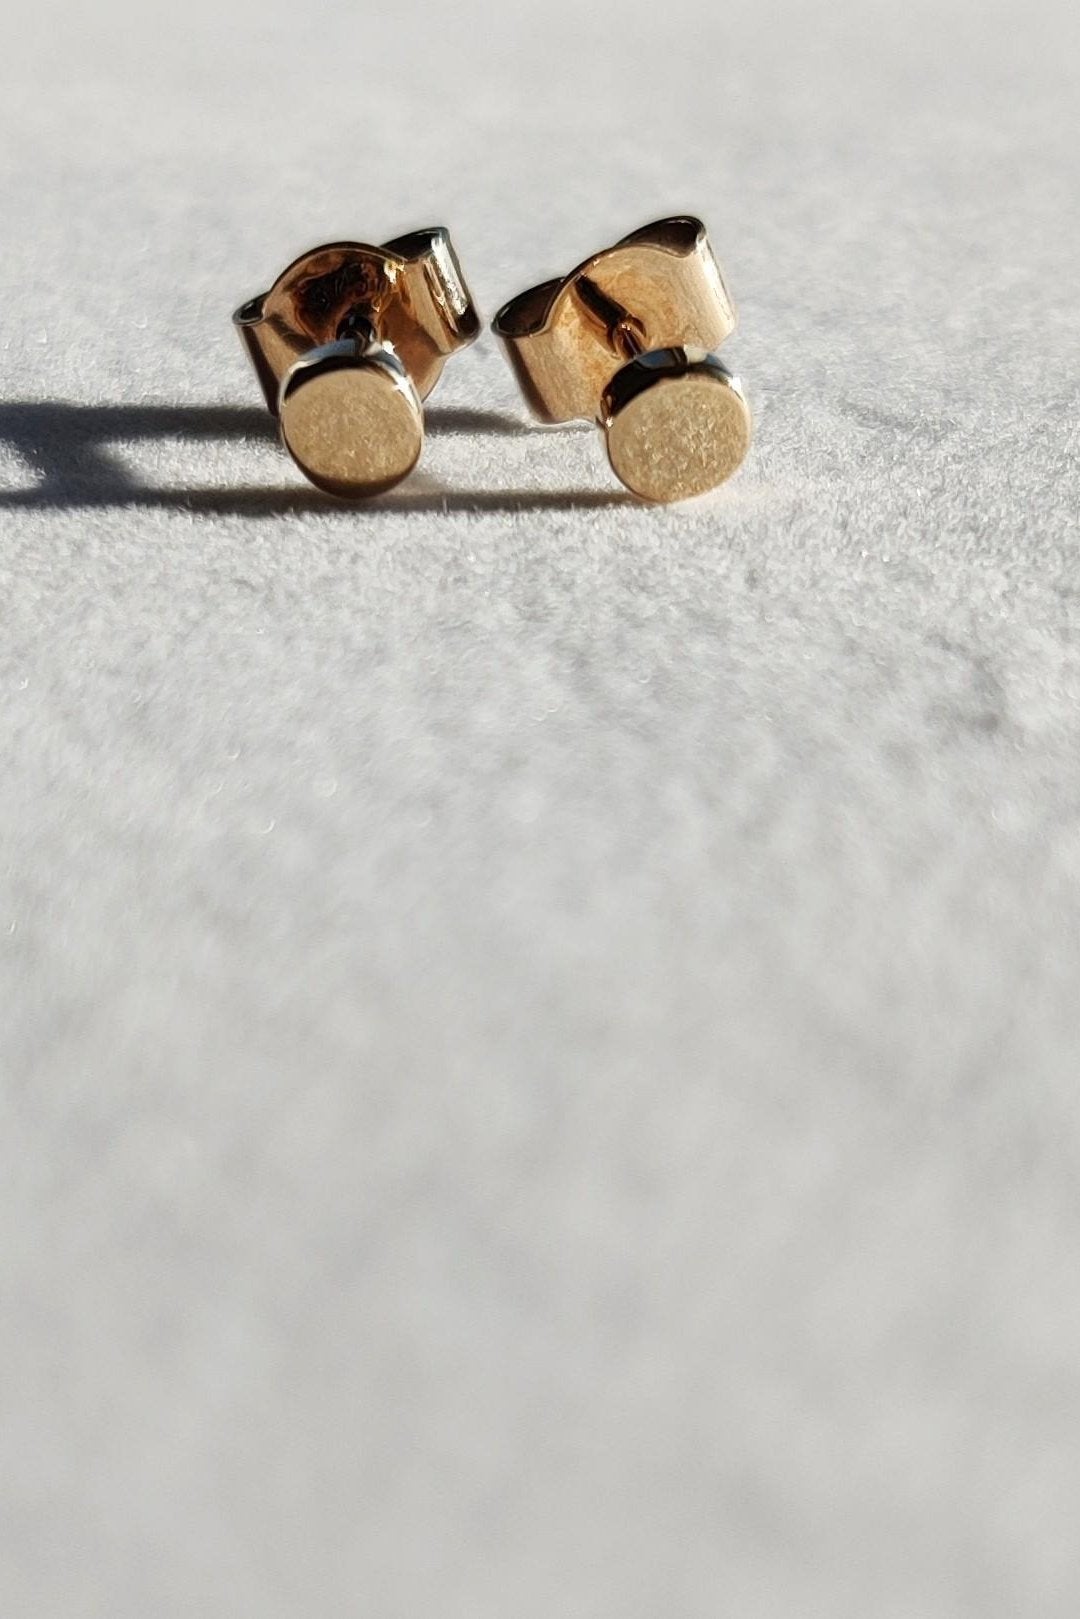 Textured Brass Dot Earrings Gold Dot Stud Earrings Hammered - Etsy UK |  Stud earrings, Earrings, Gold dots